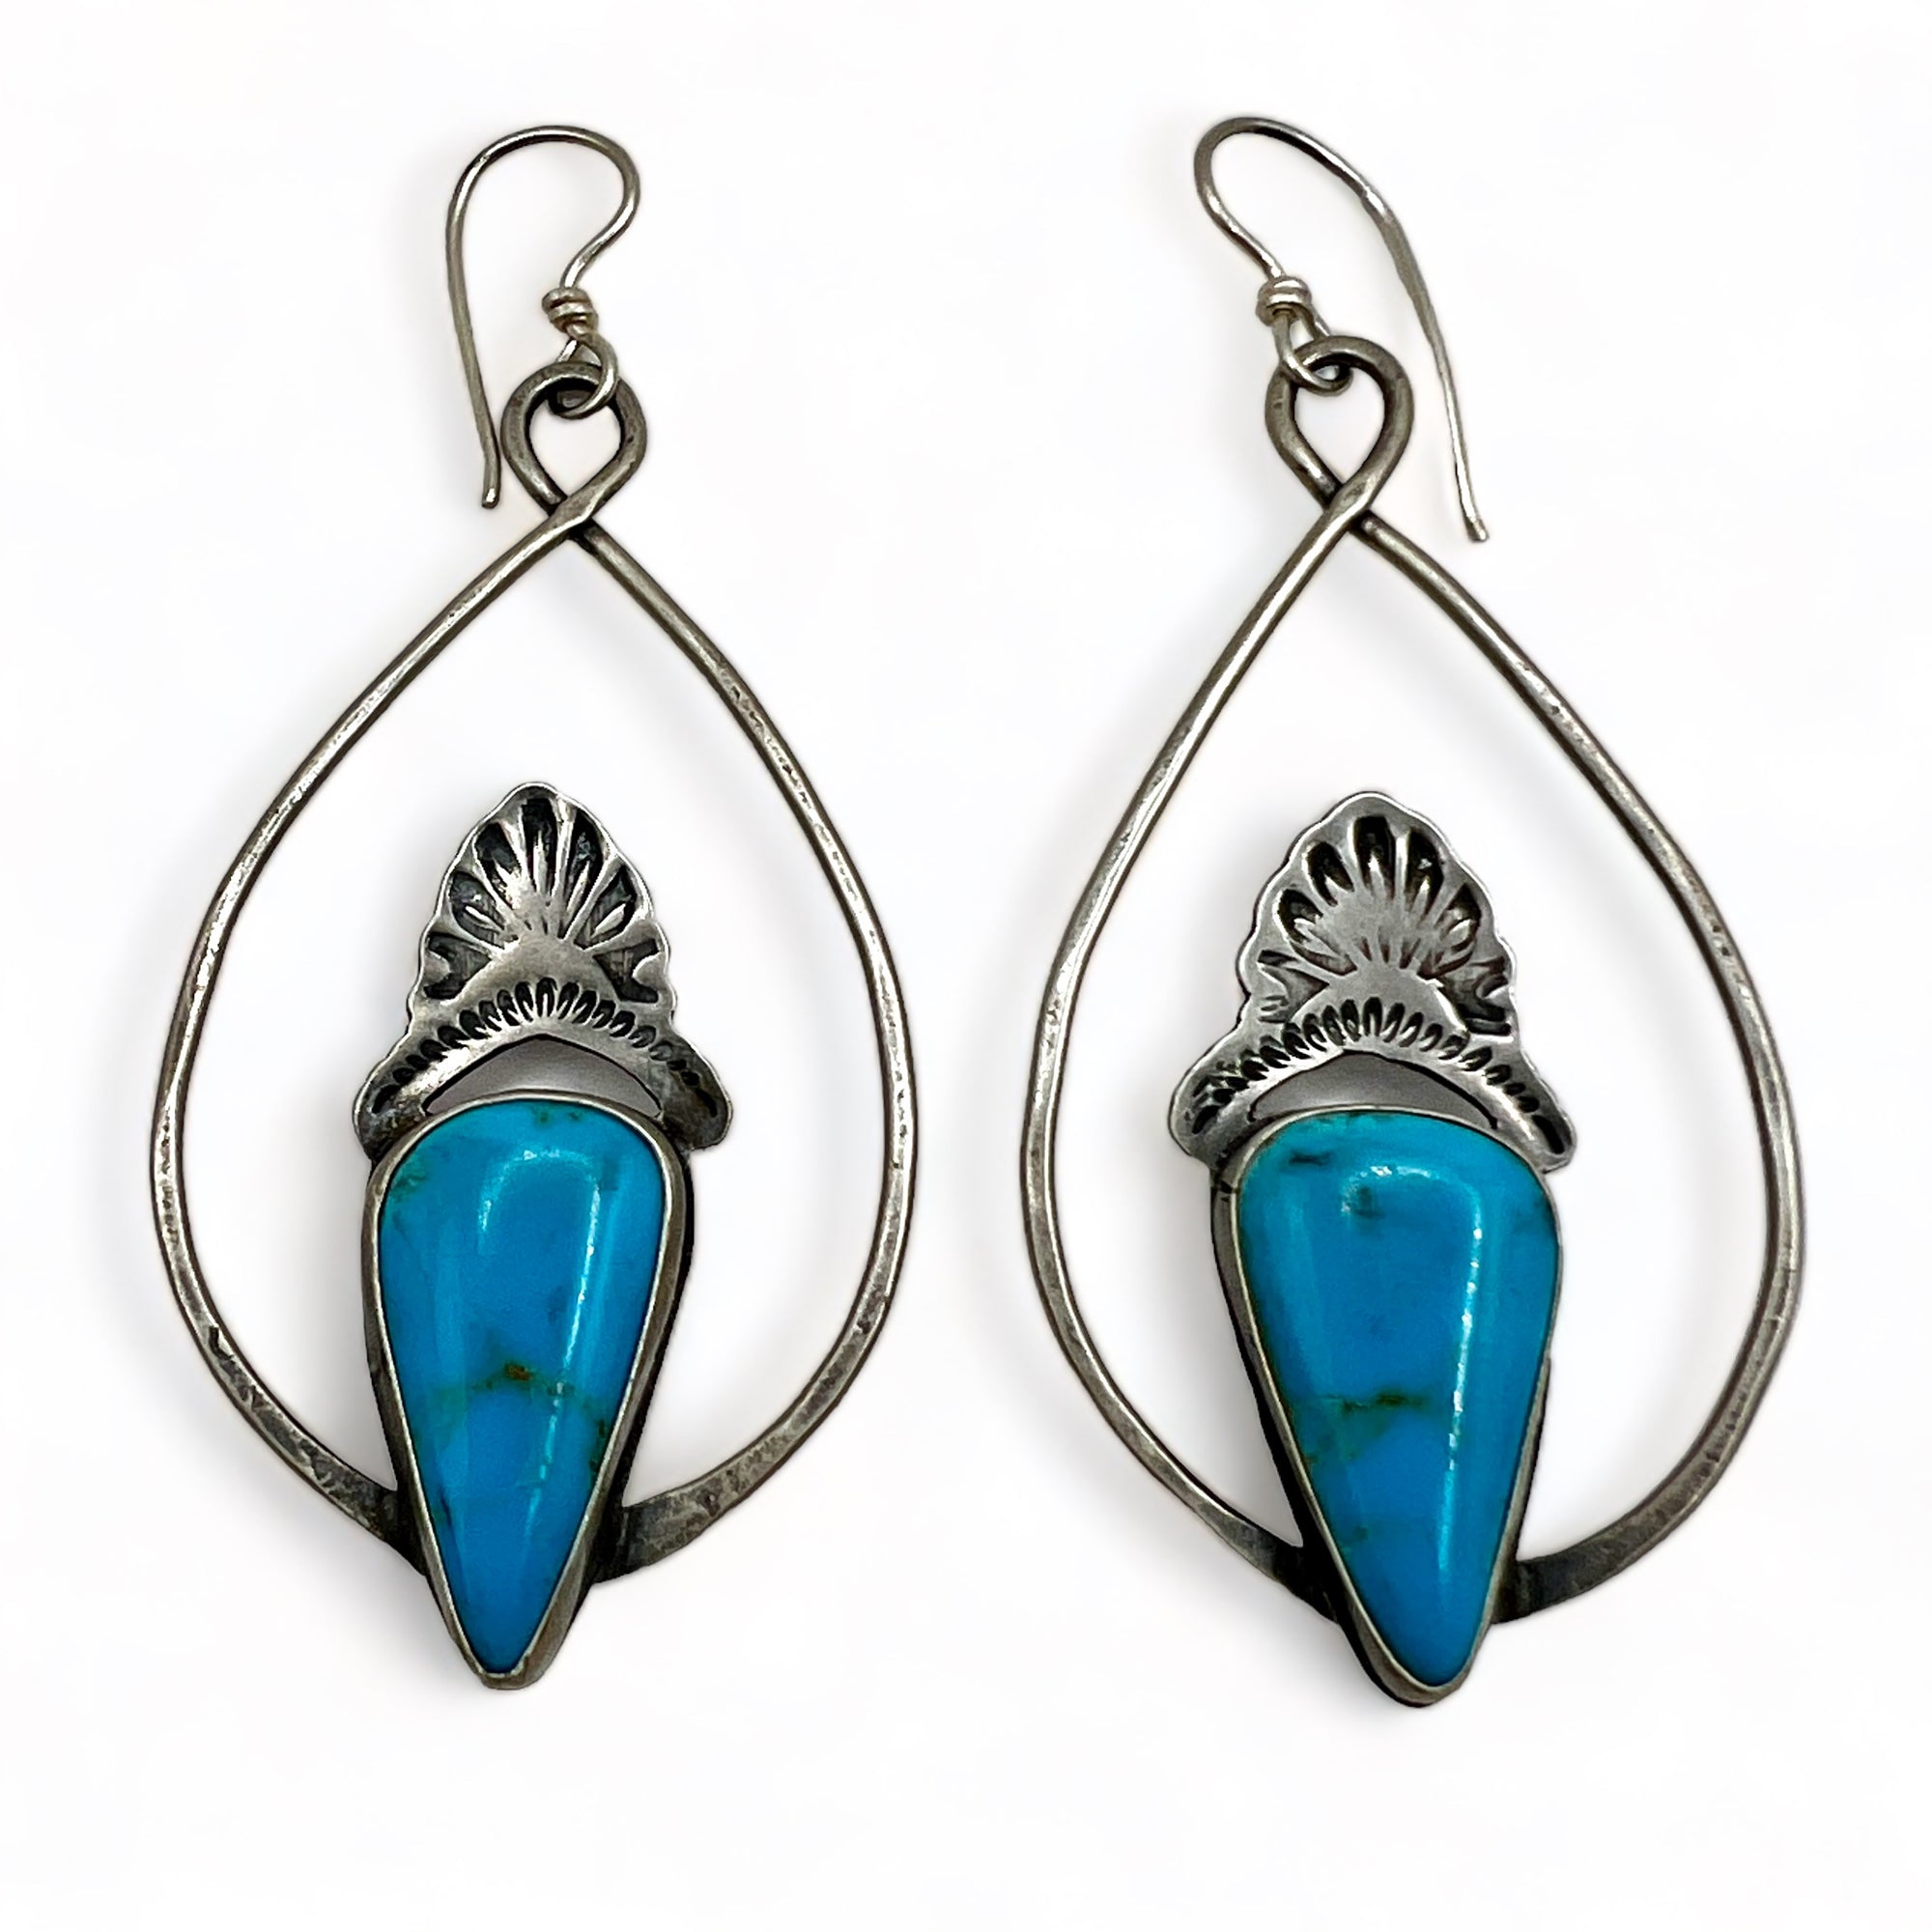 Prairie Earrings in Blue Bandit Turquoise